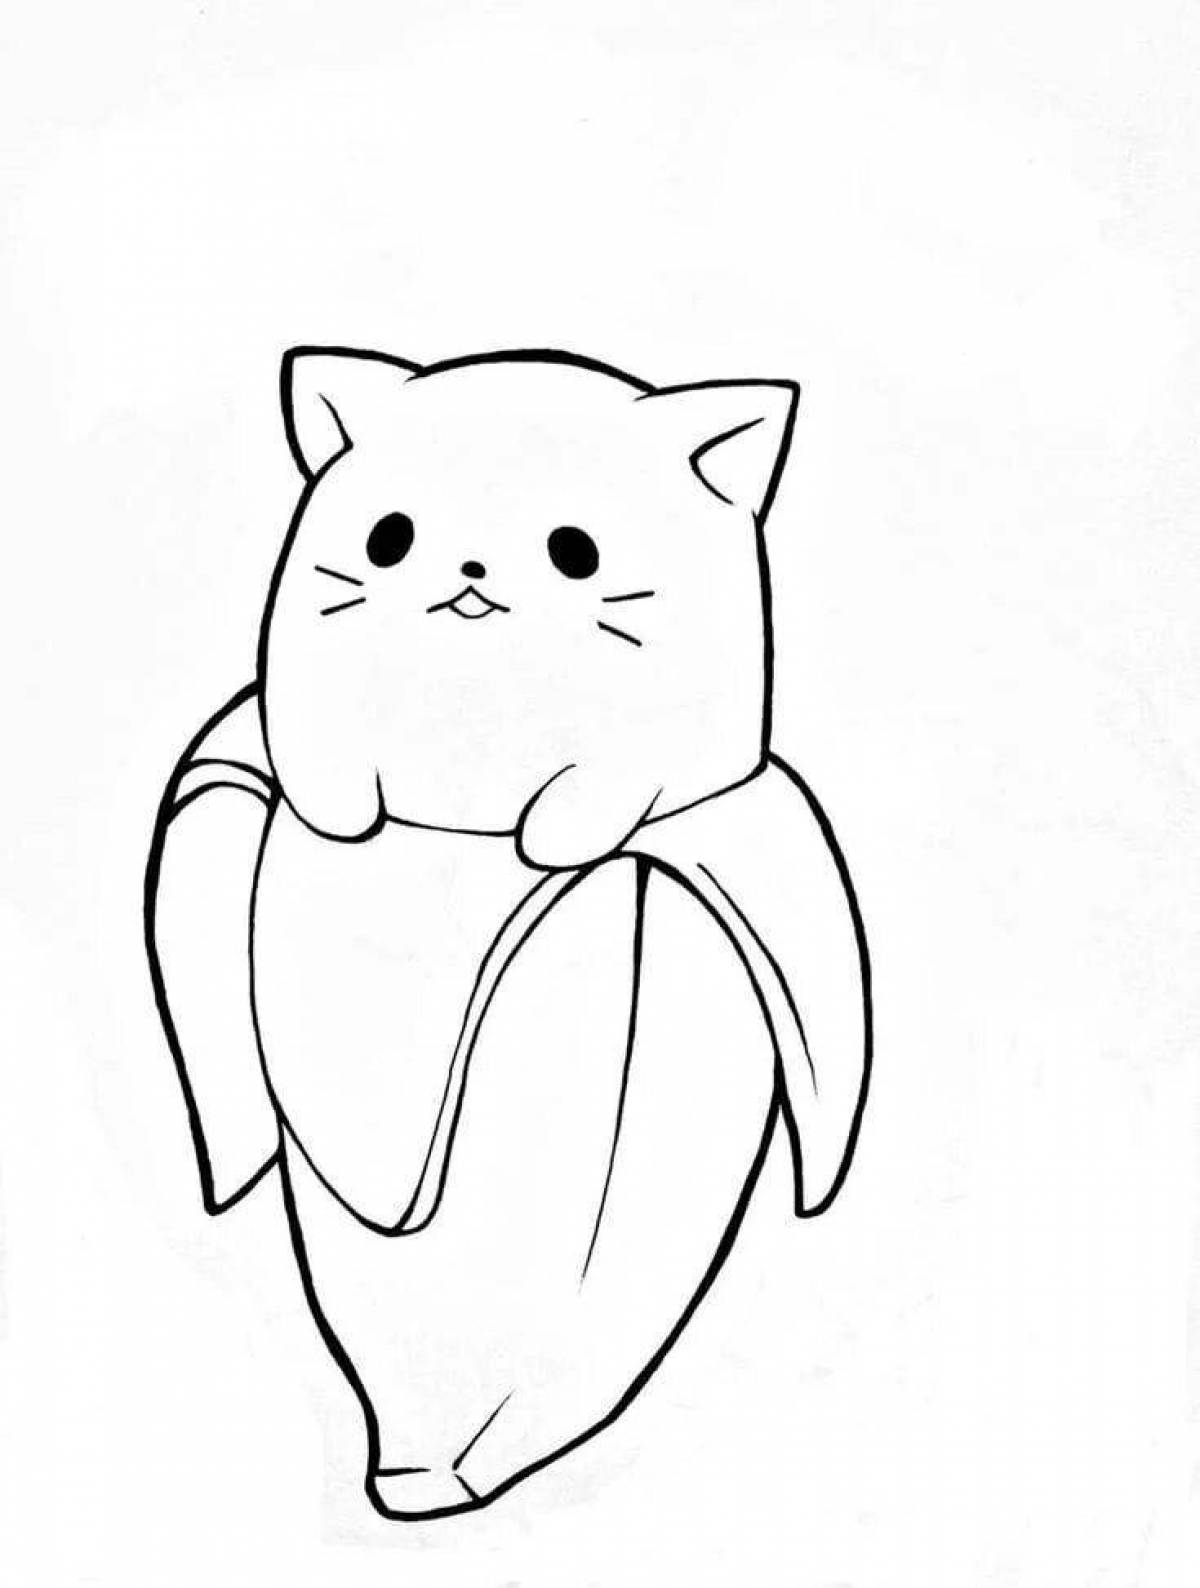 Joyful kawaii cat coloring book